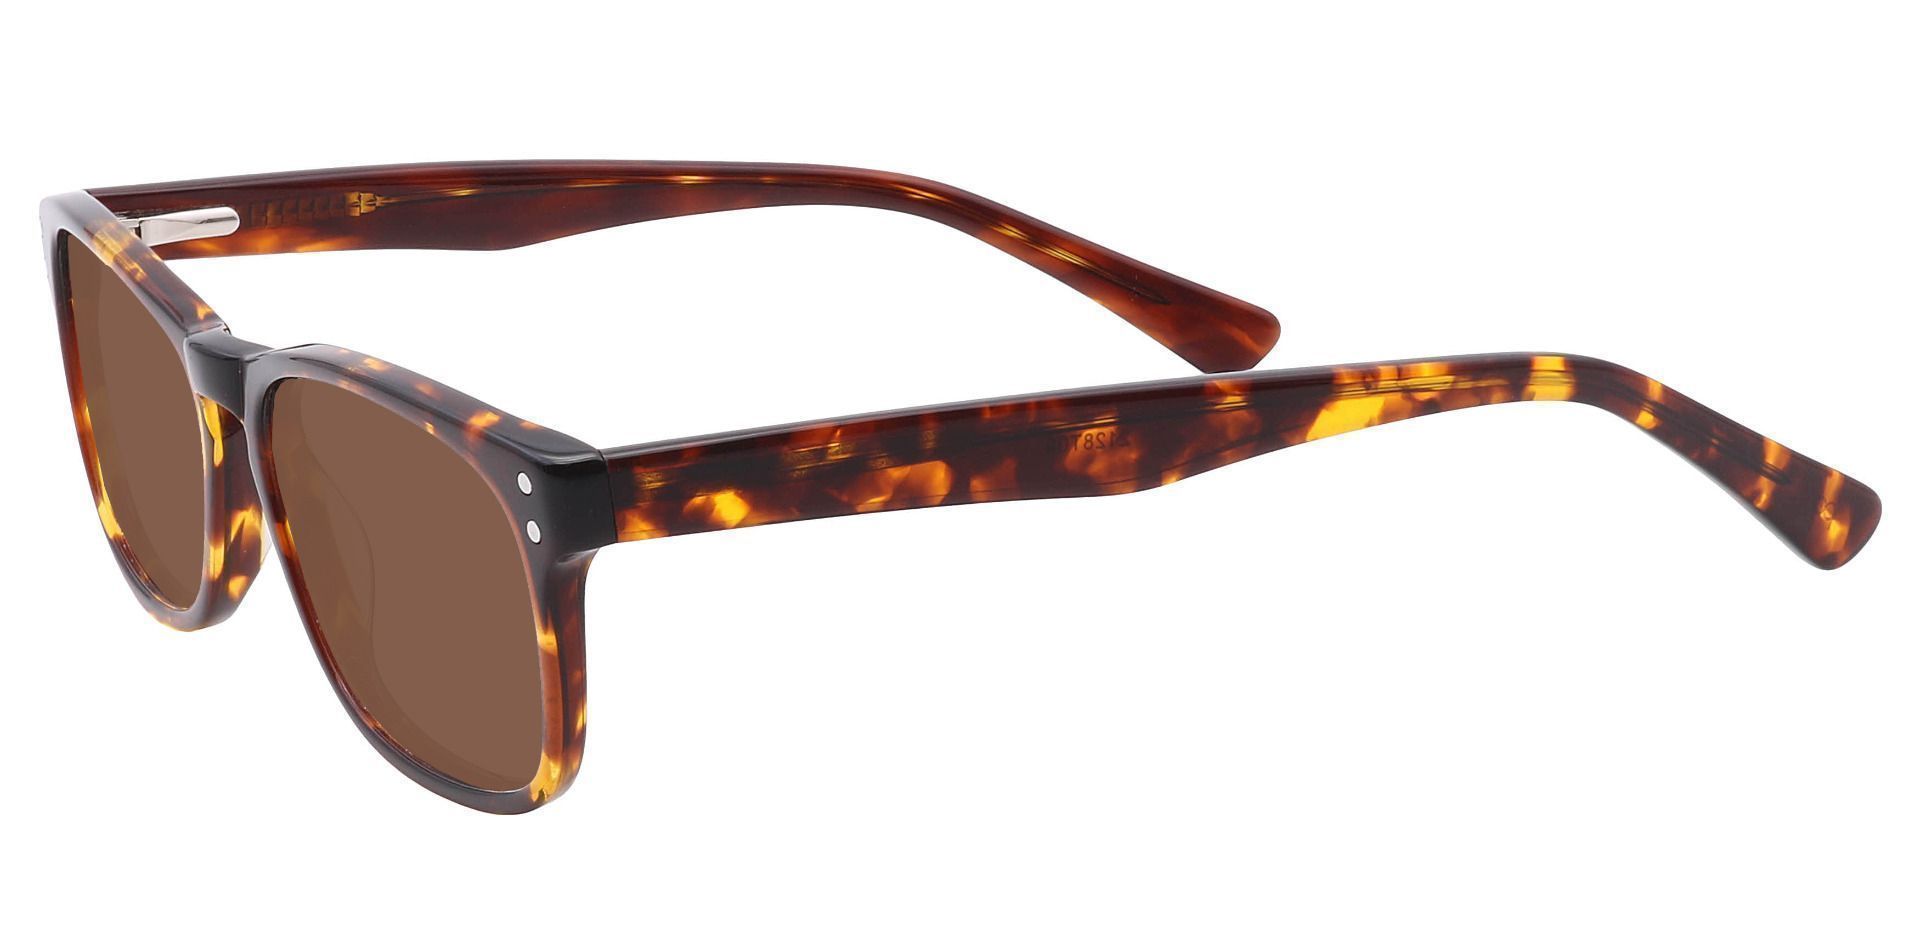 Morris Rectangle Reading Sunglasses - Tortoise Frame With Brown Lenses